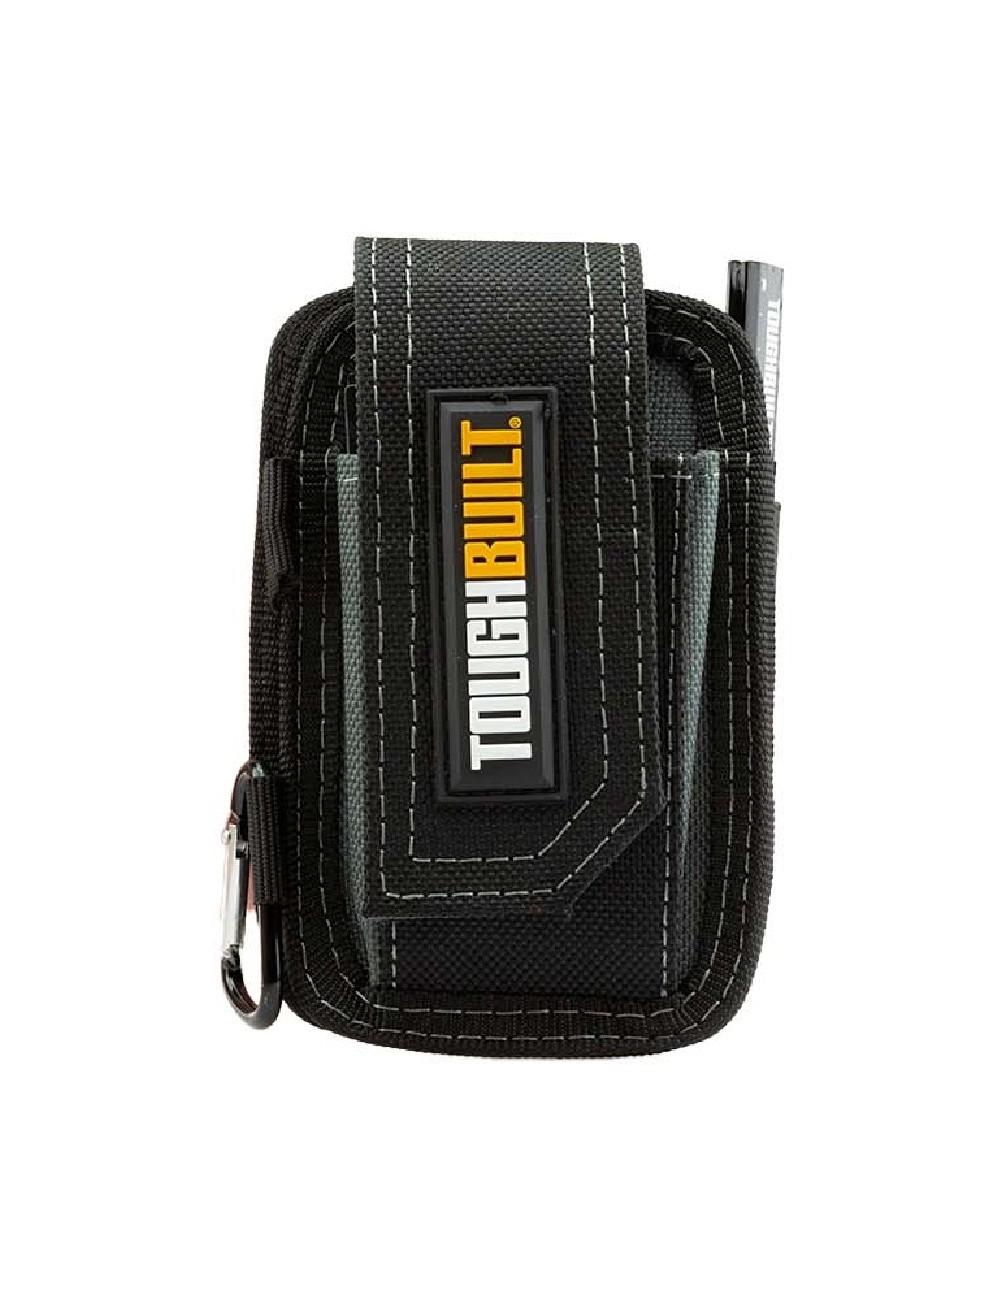 ToughBuilt TB-33 smartphone pocket